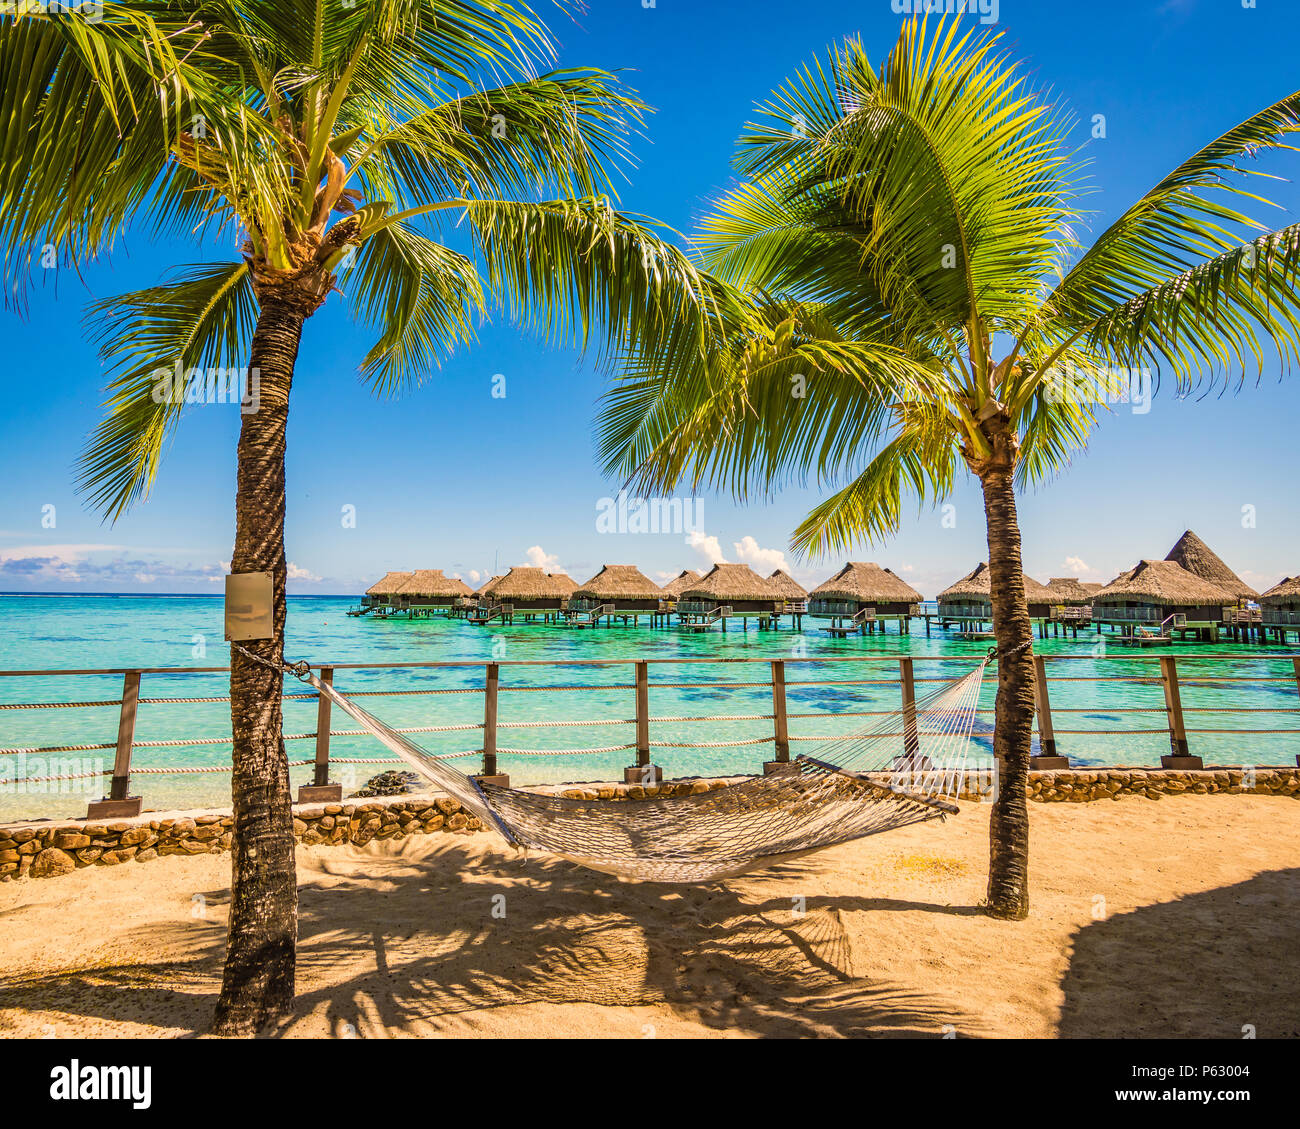 Hamaca entre palmeras en la playa de vacaciones tropicales de verano. Foto de stock